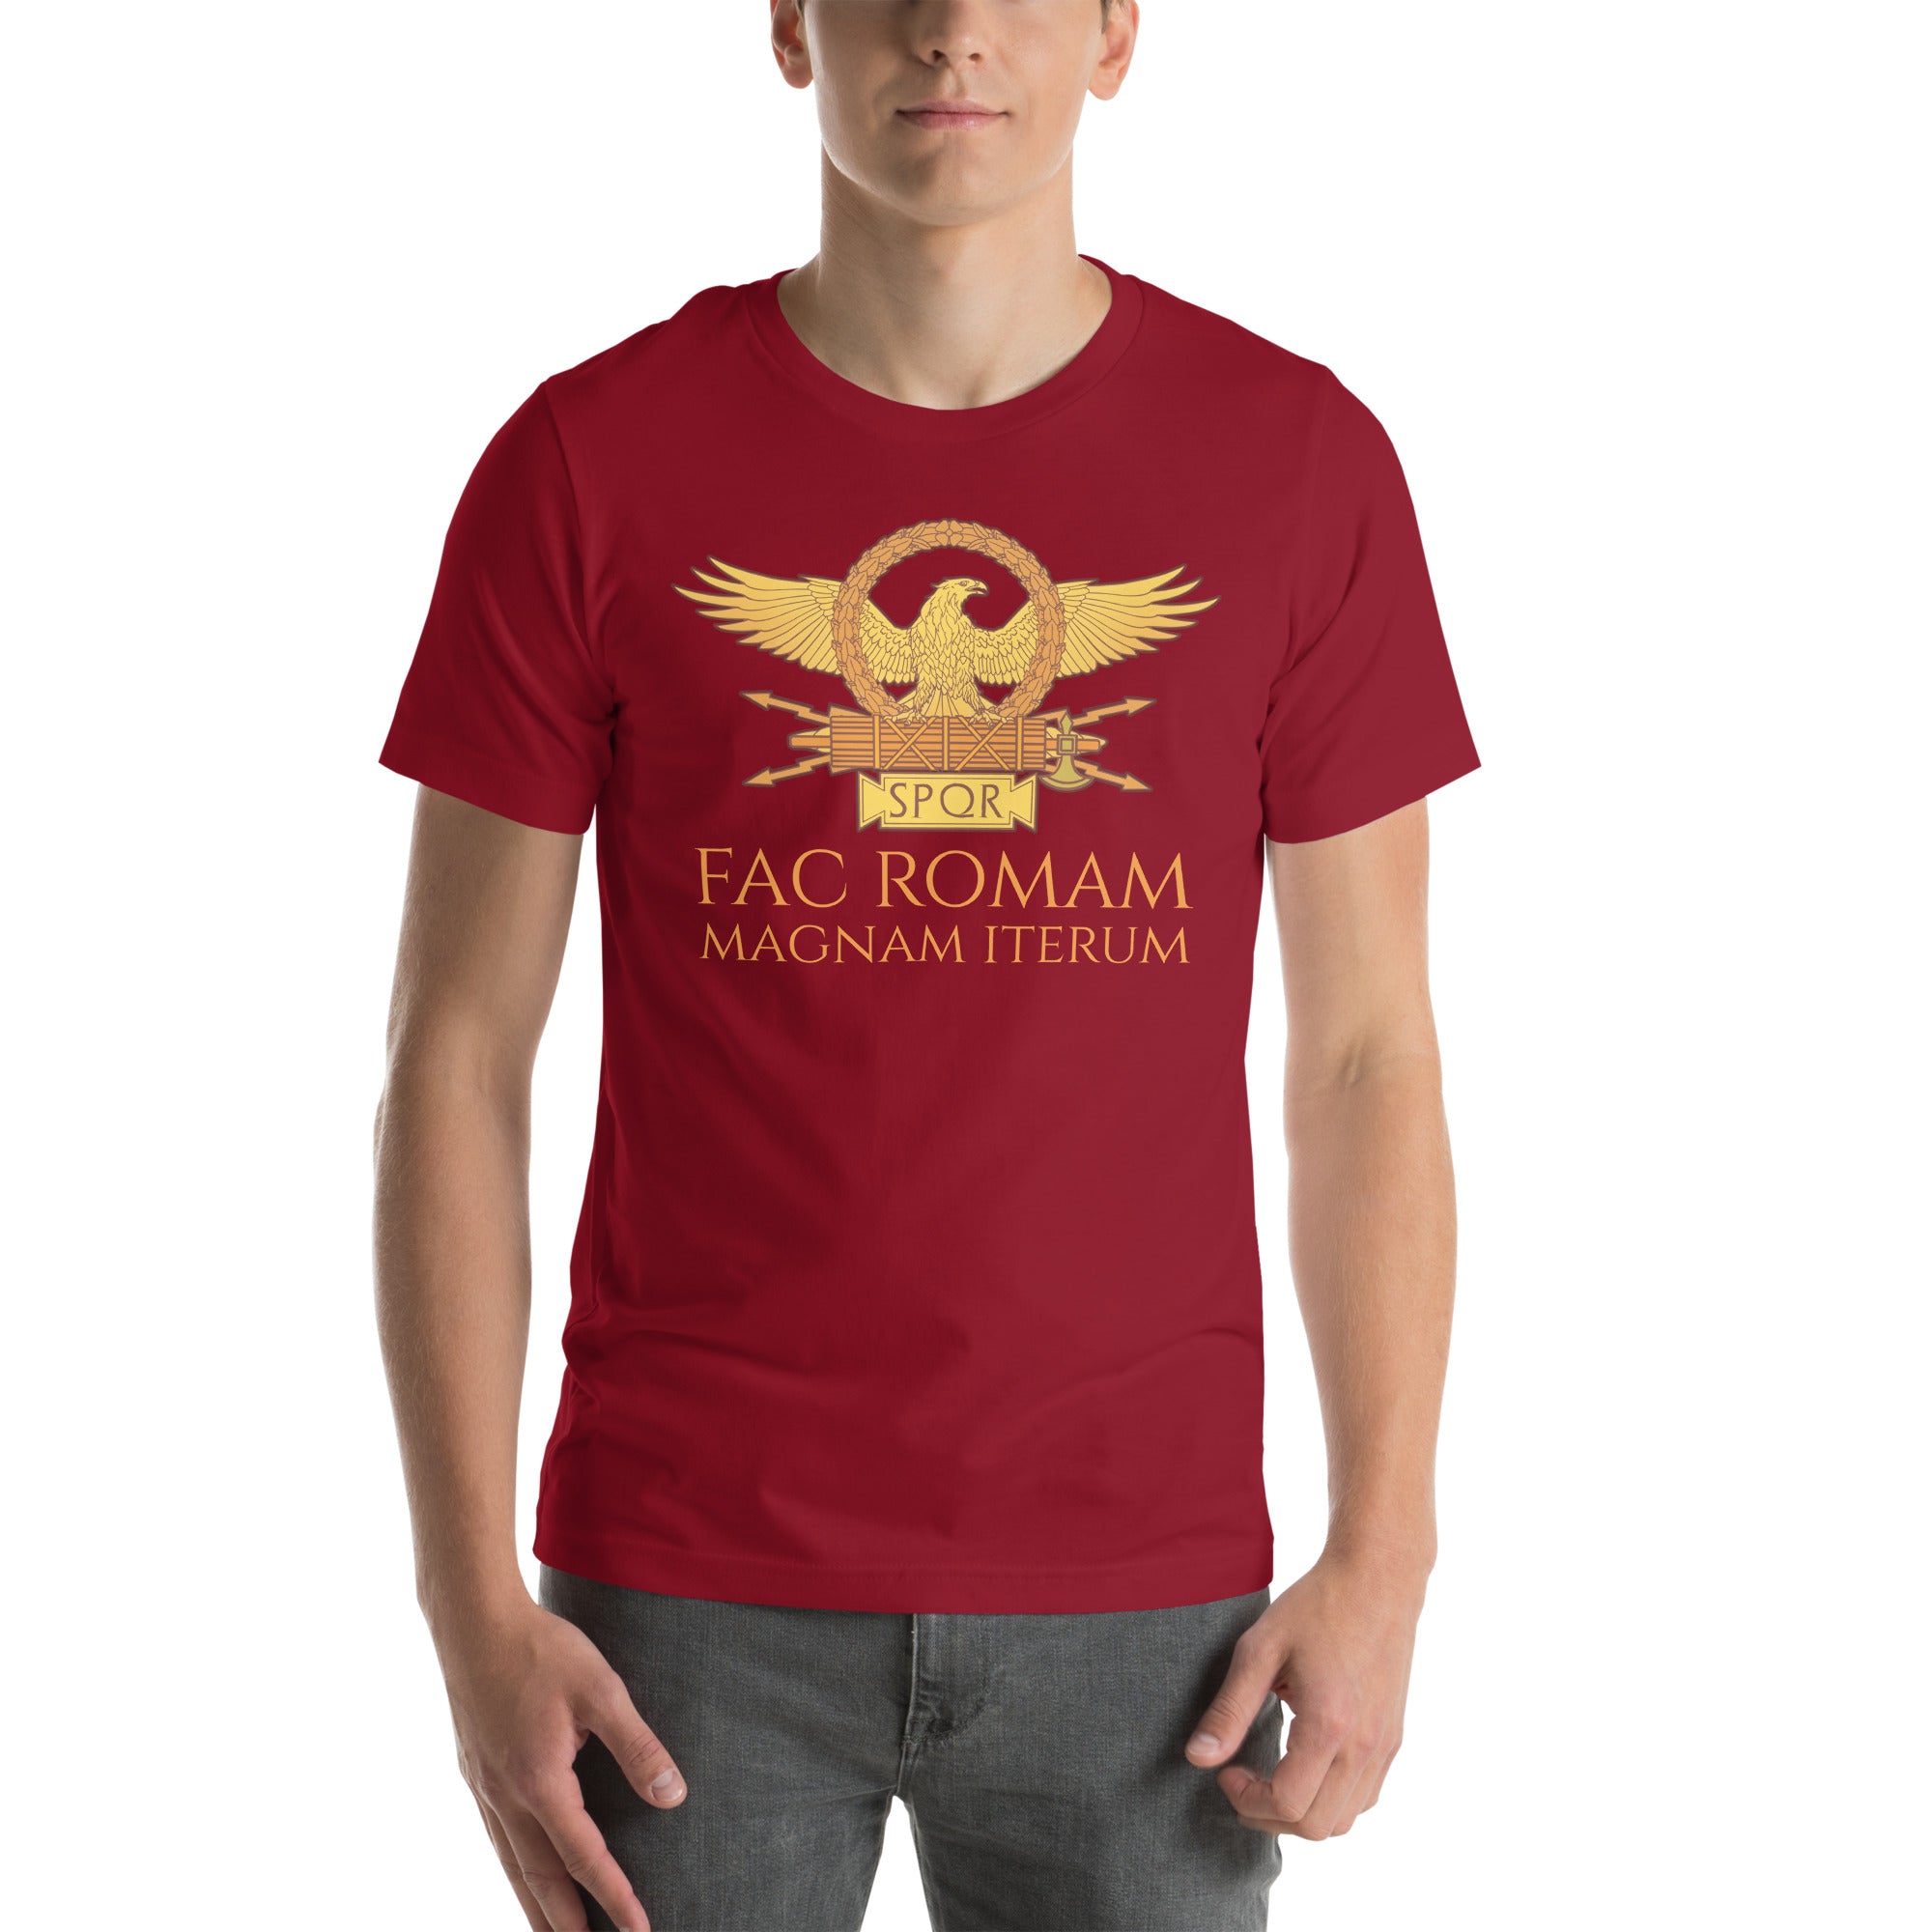 Fac Romam Magnam Iterum - Make Rome Great Again - Classical Latin Unisex T-Shirt